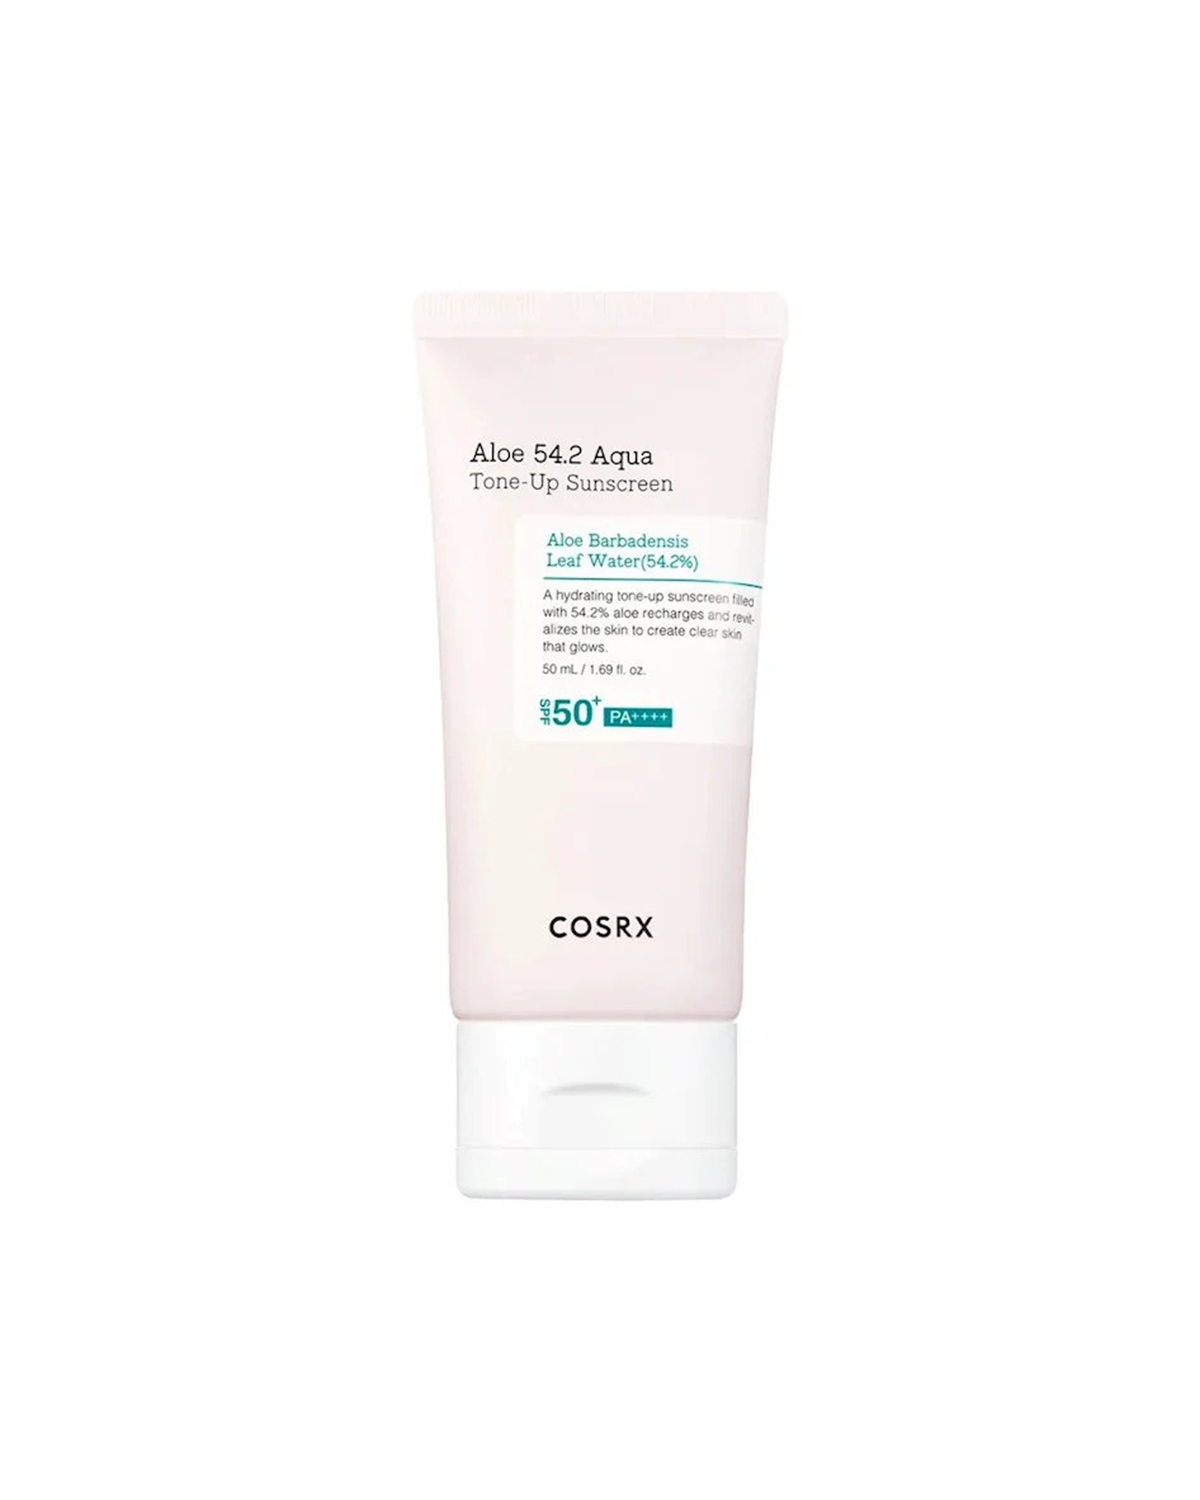 COSRX Aloe 54.2 Aqua Tone-Up Sunscreen SPF50+ PA++++ 50 ml